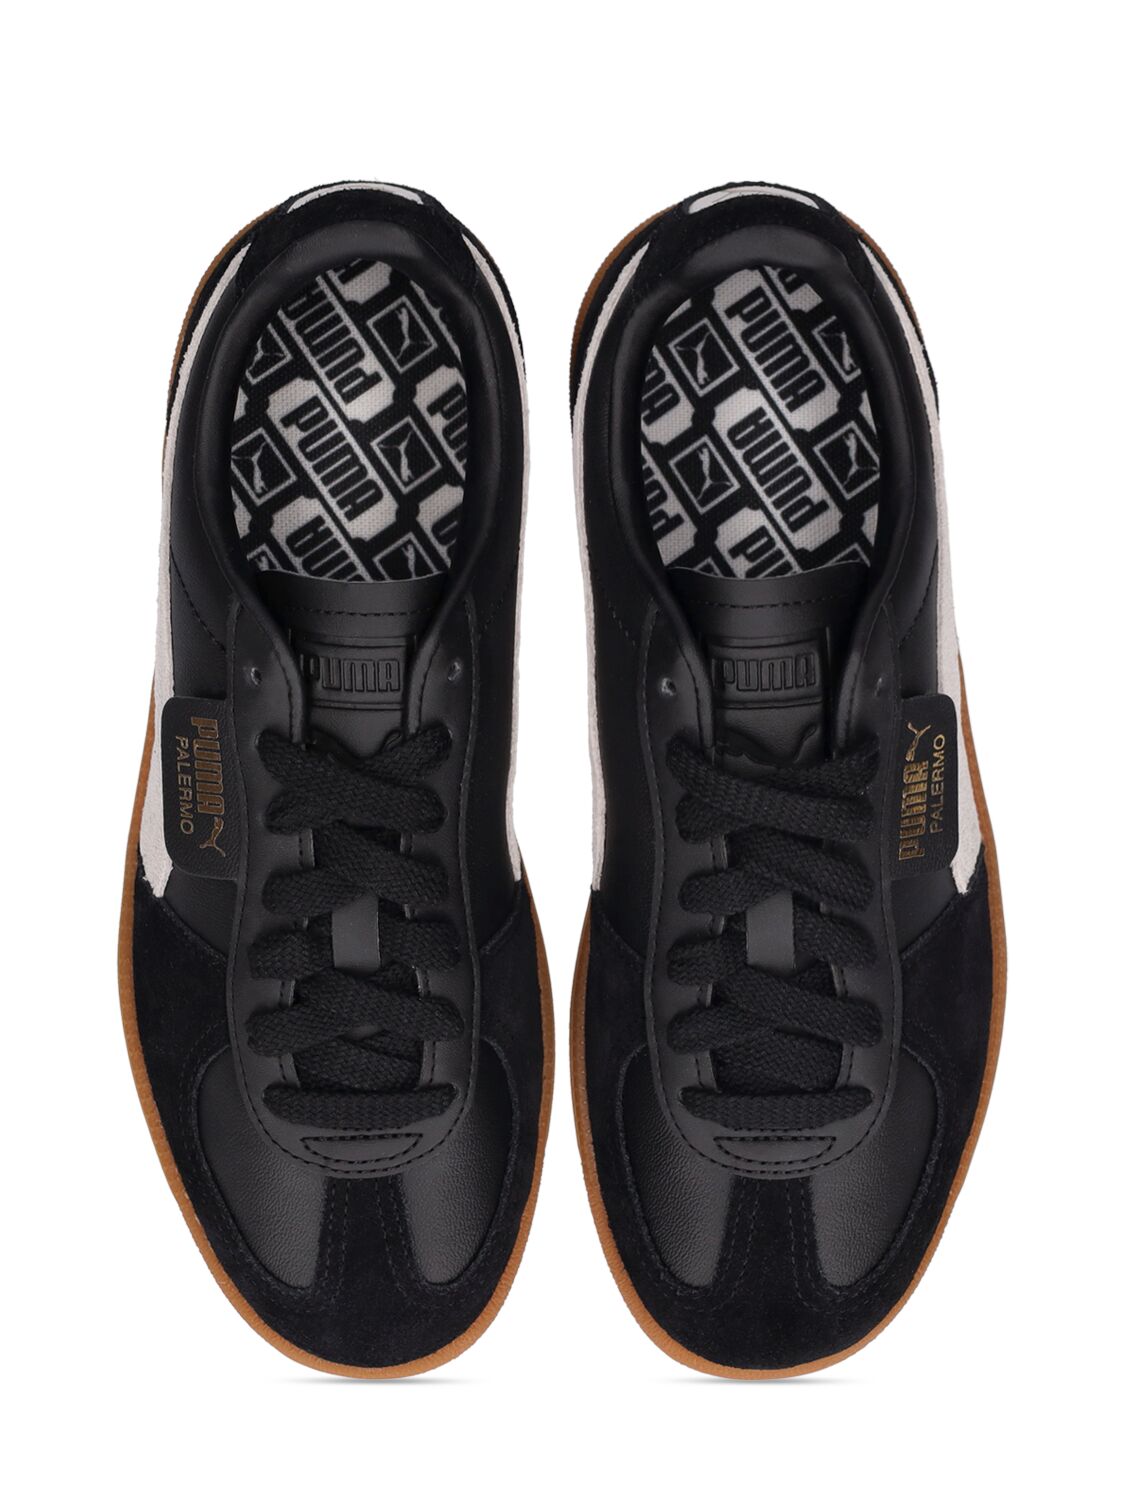 Shop Puma Palermo Sneakers In  Black,grey